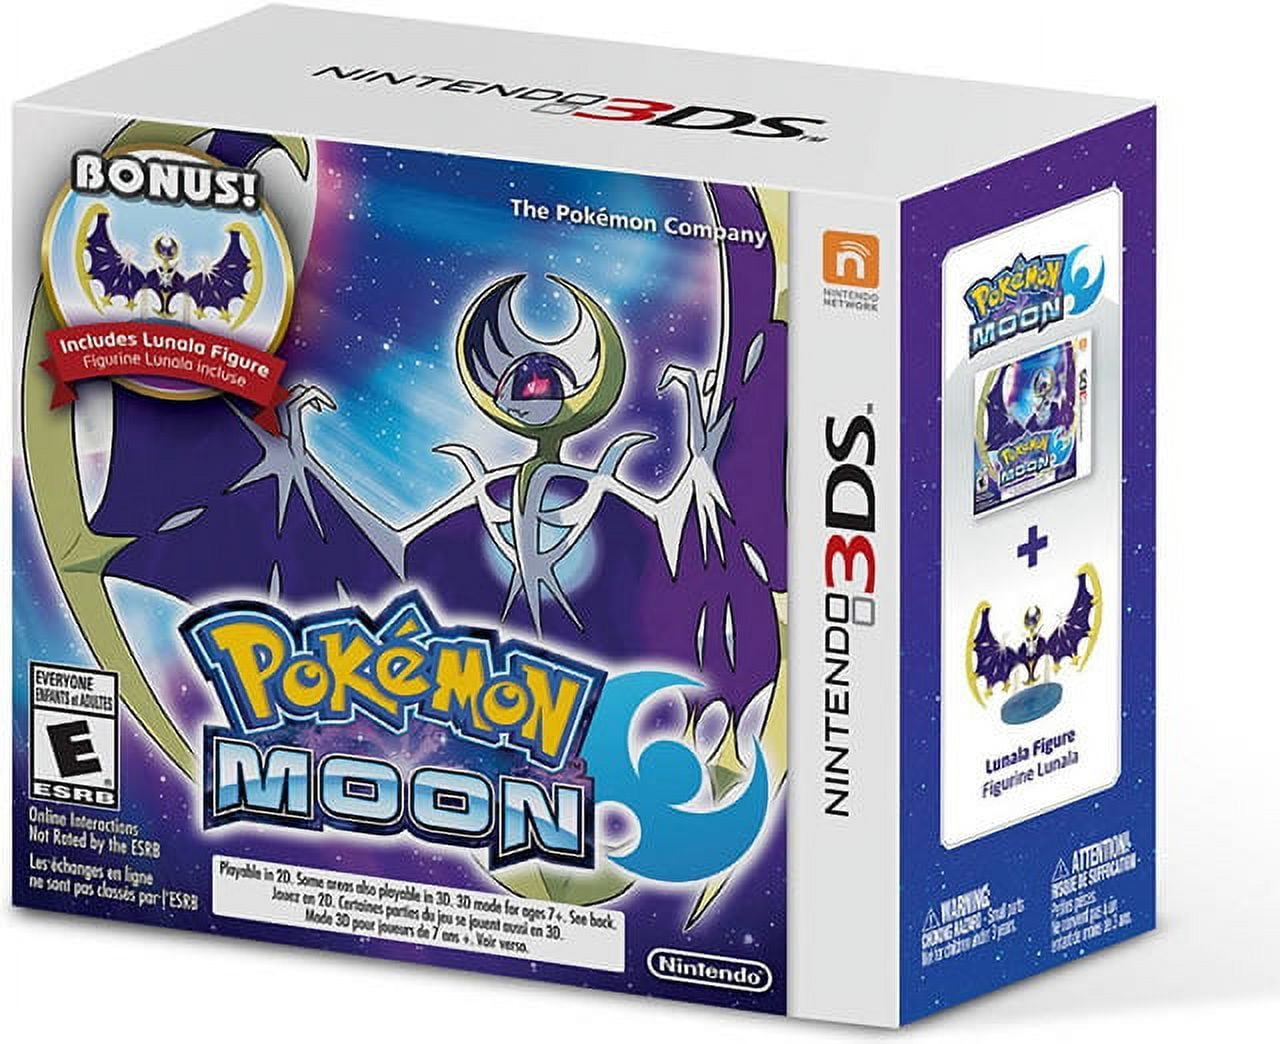 Pokemon Moon - Bonus Lunala Figure 3DS 